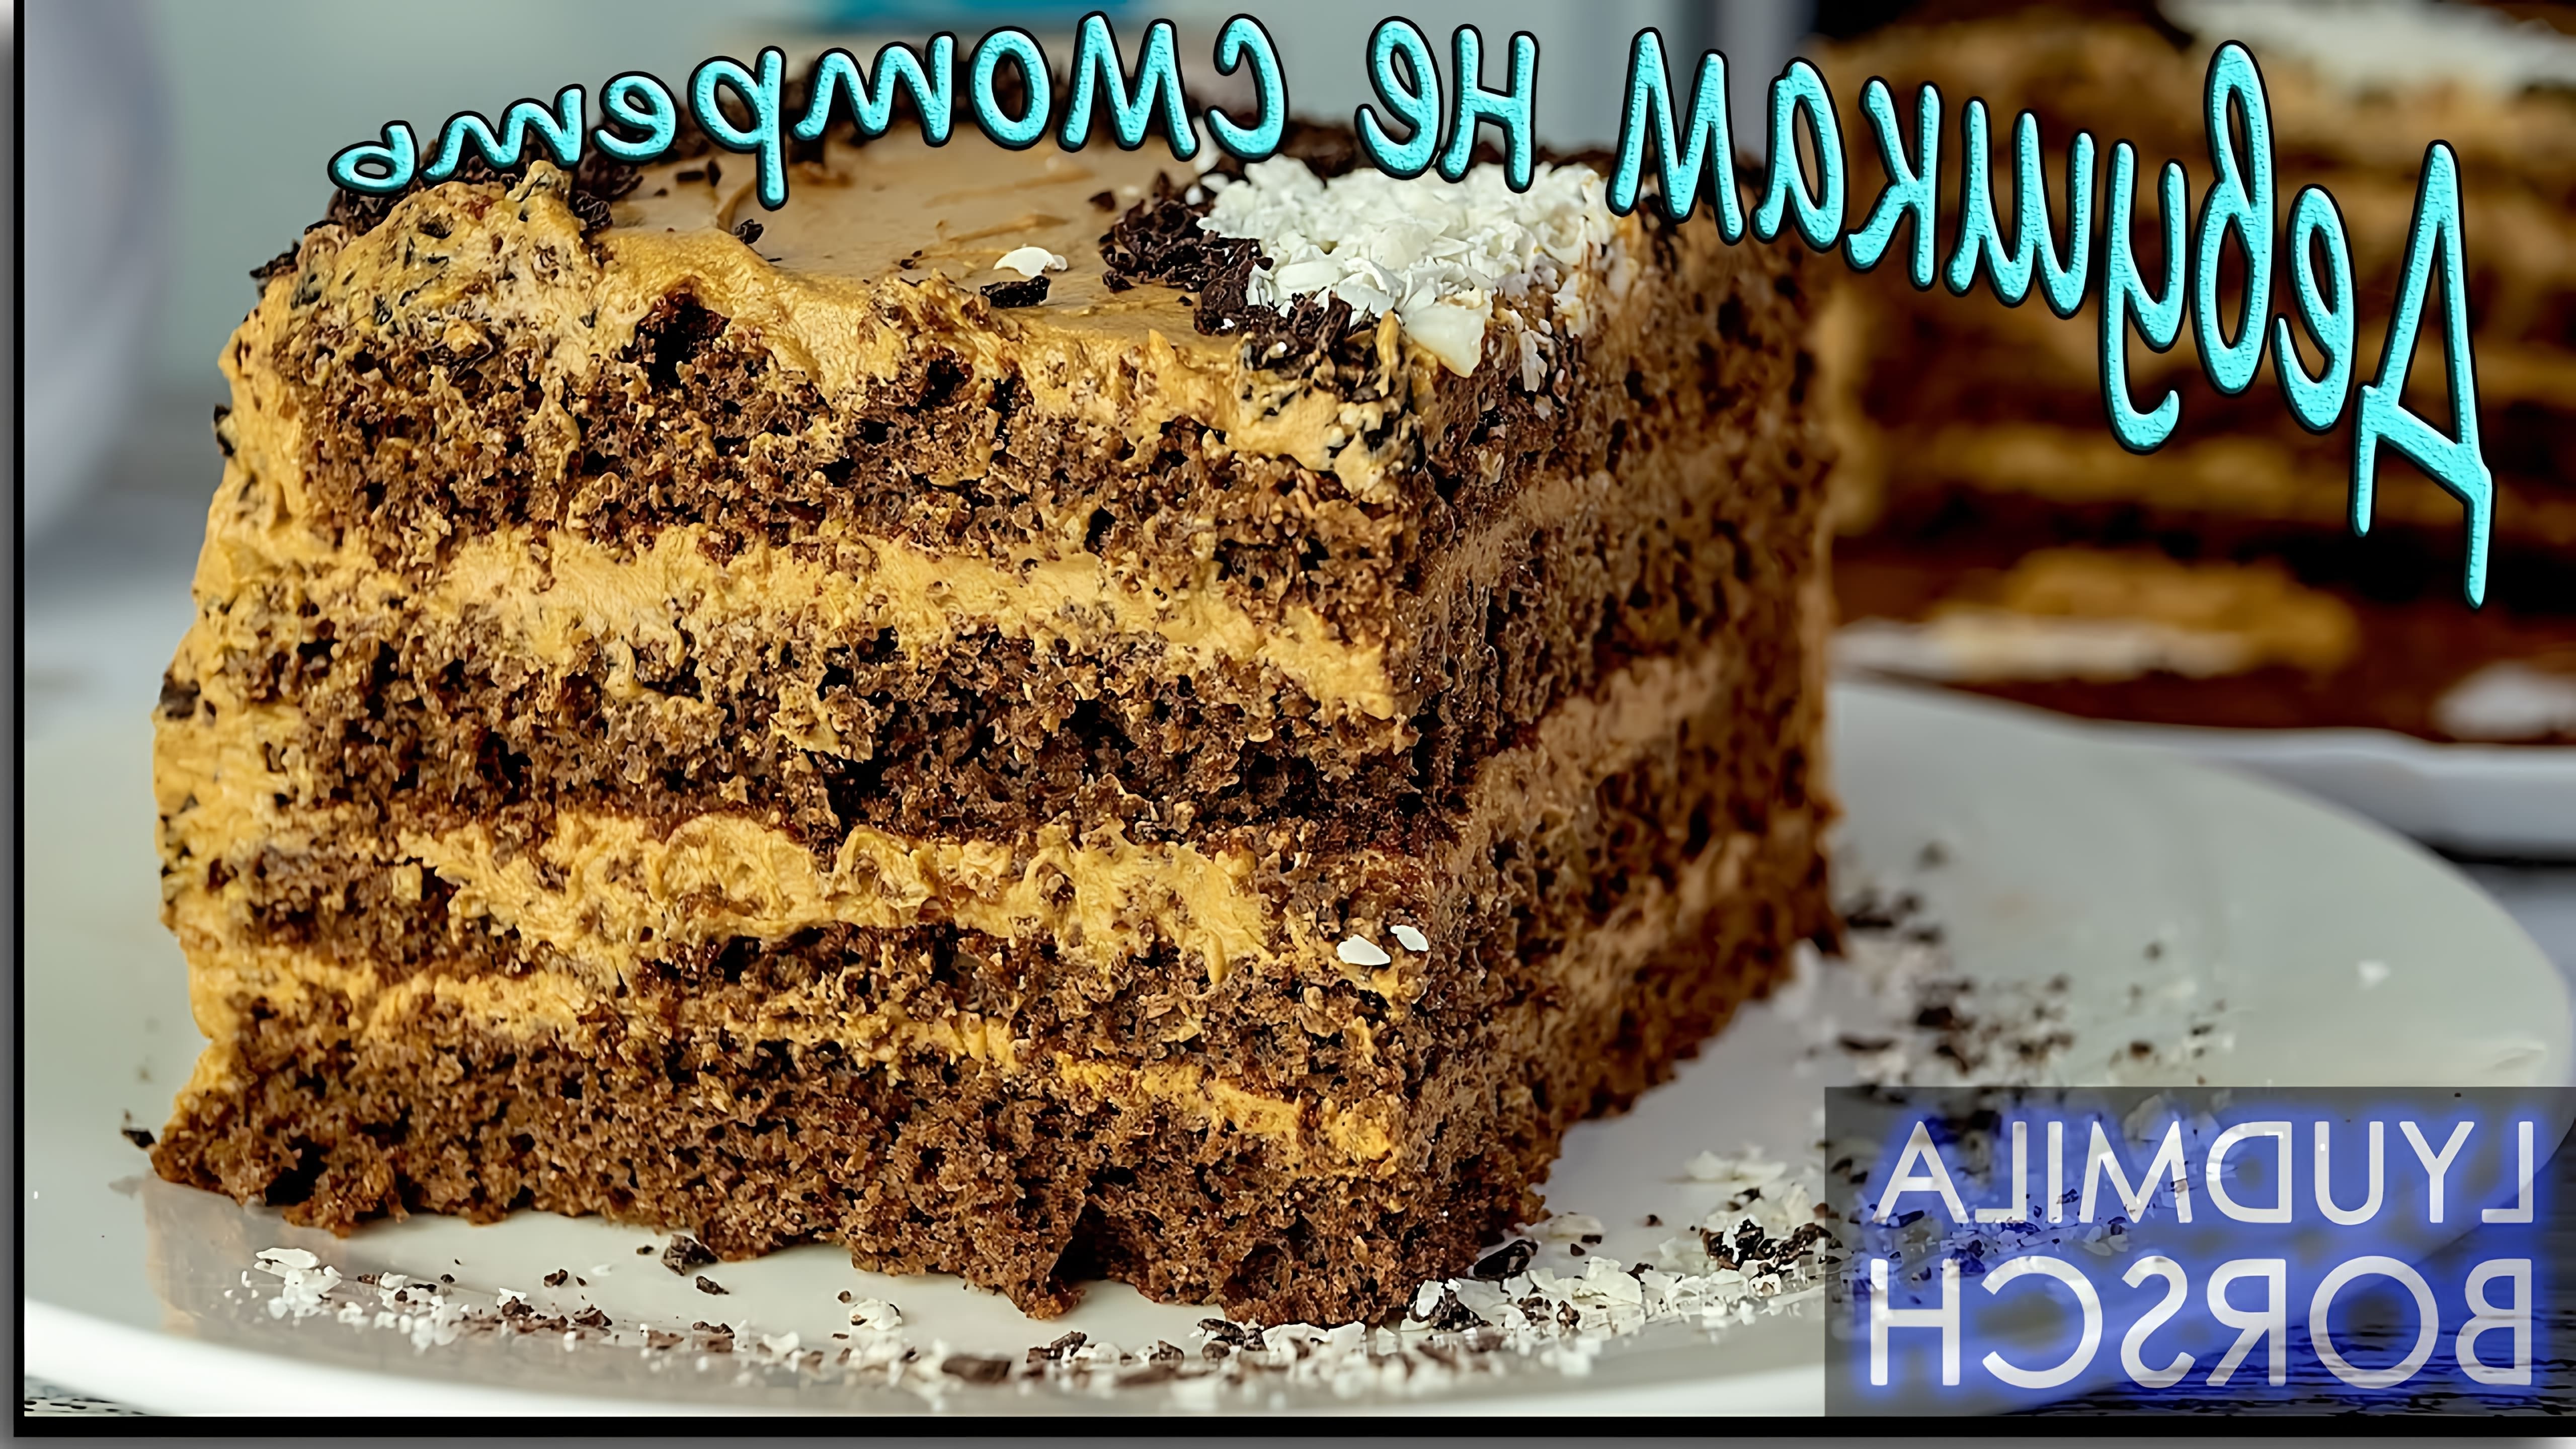 В этом видео демонстрируется рецепт приготовления торта на скорую руку за 100 рублей